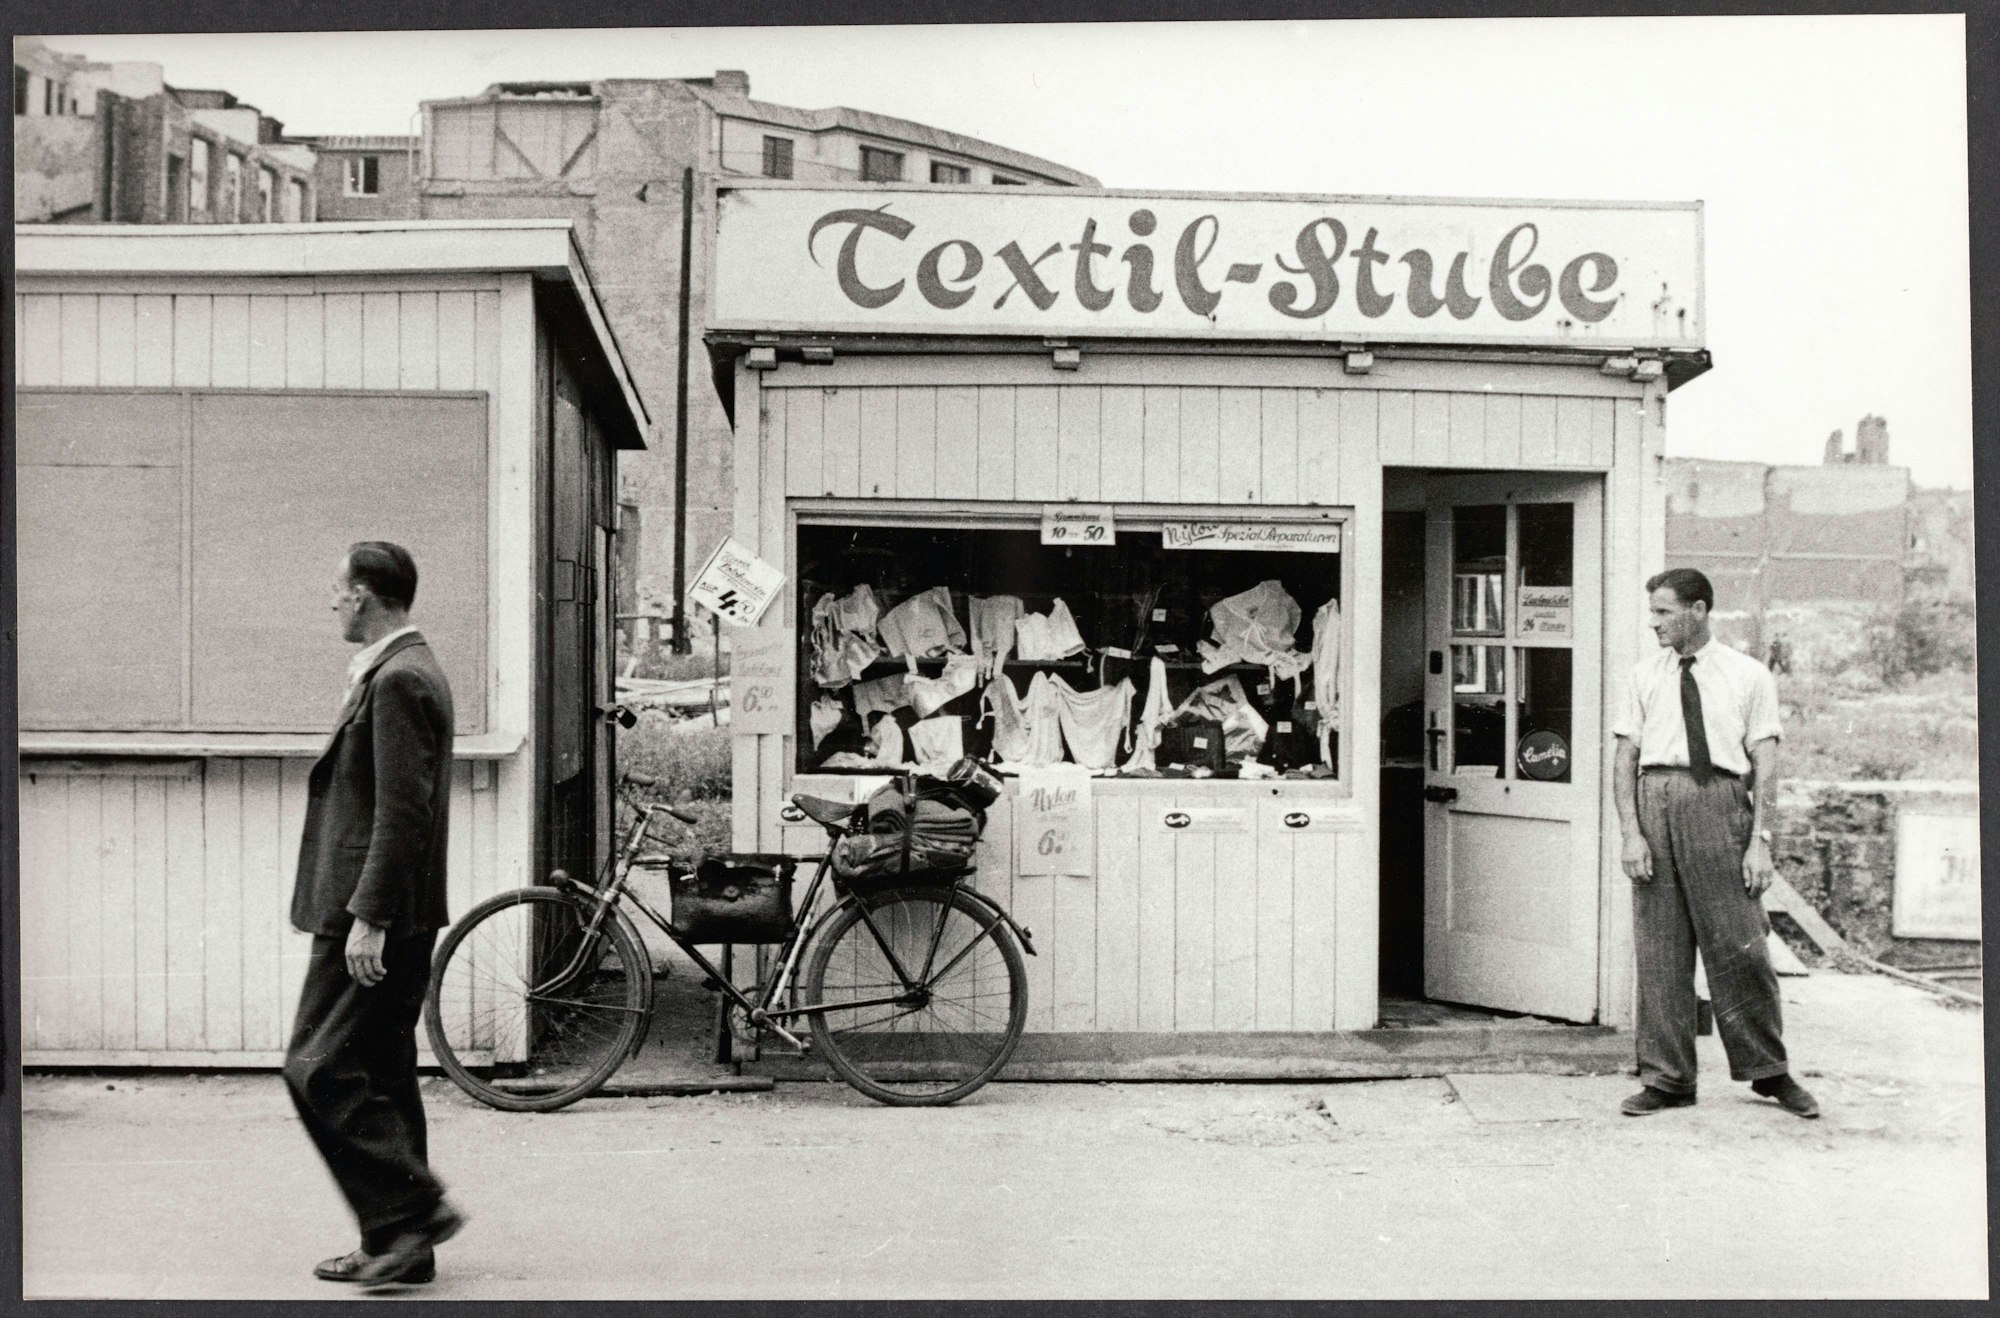 Auch die Textil-Stube gehört zu den ersten wiedereröffneten Läden nach dem Krieg.